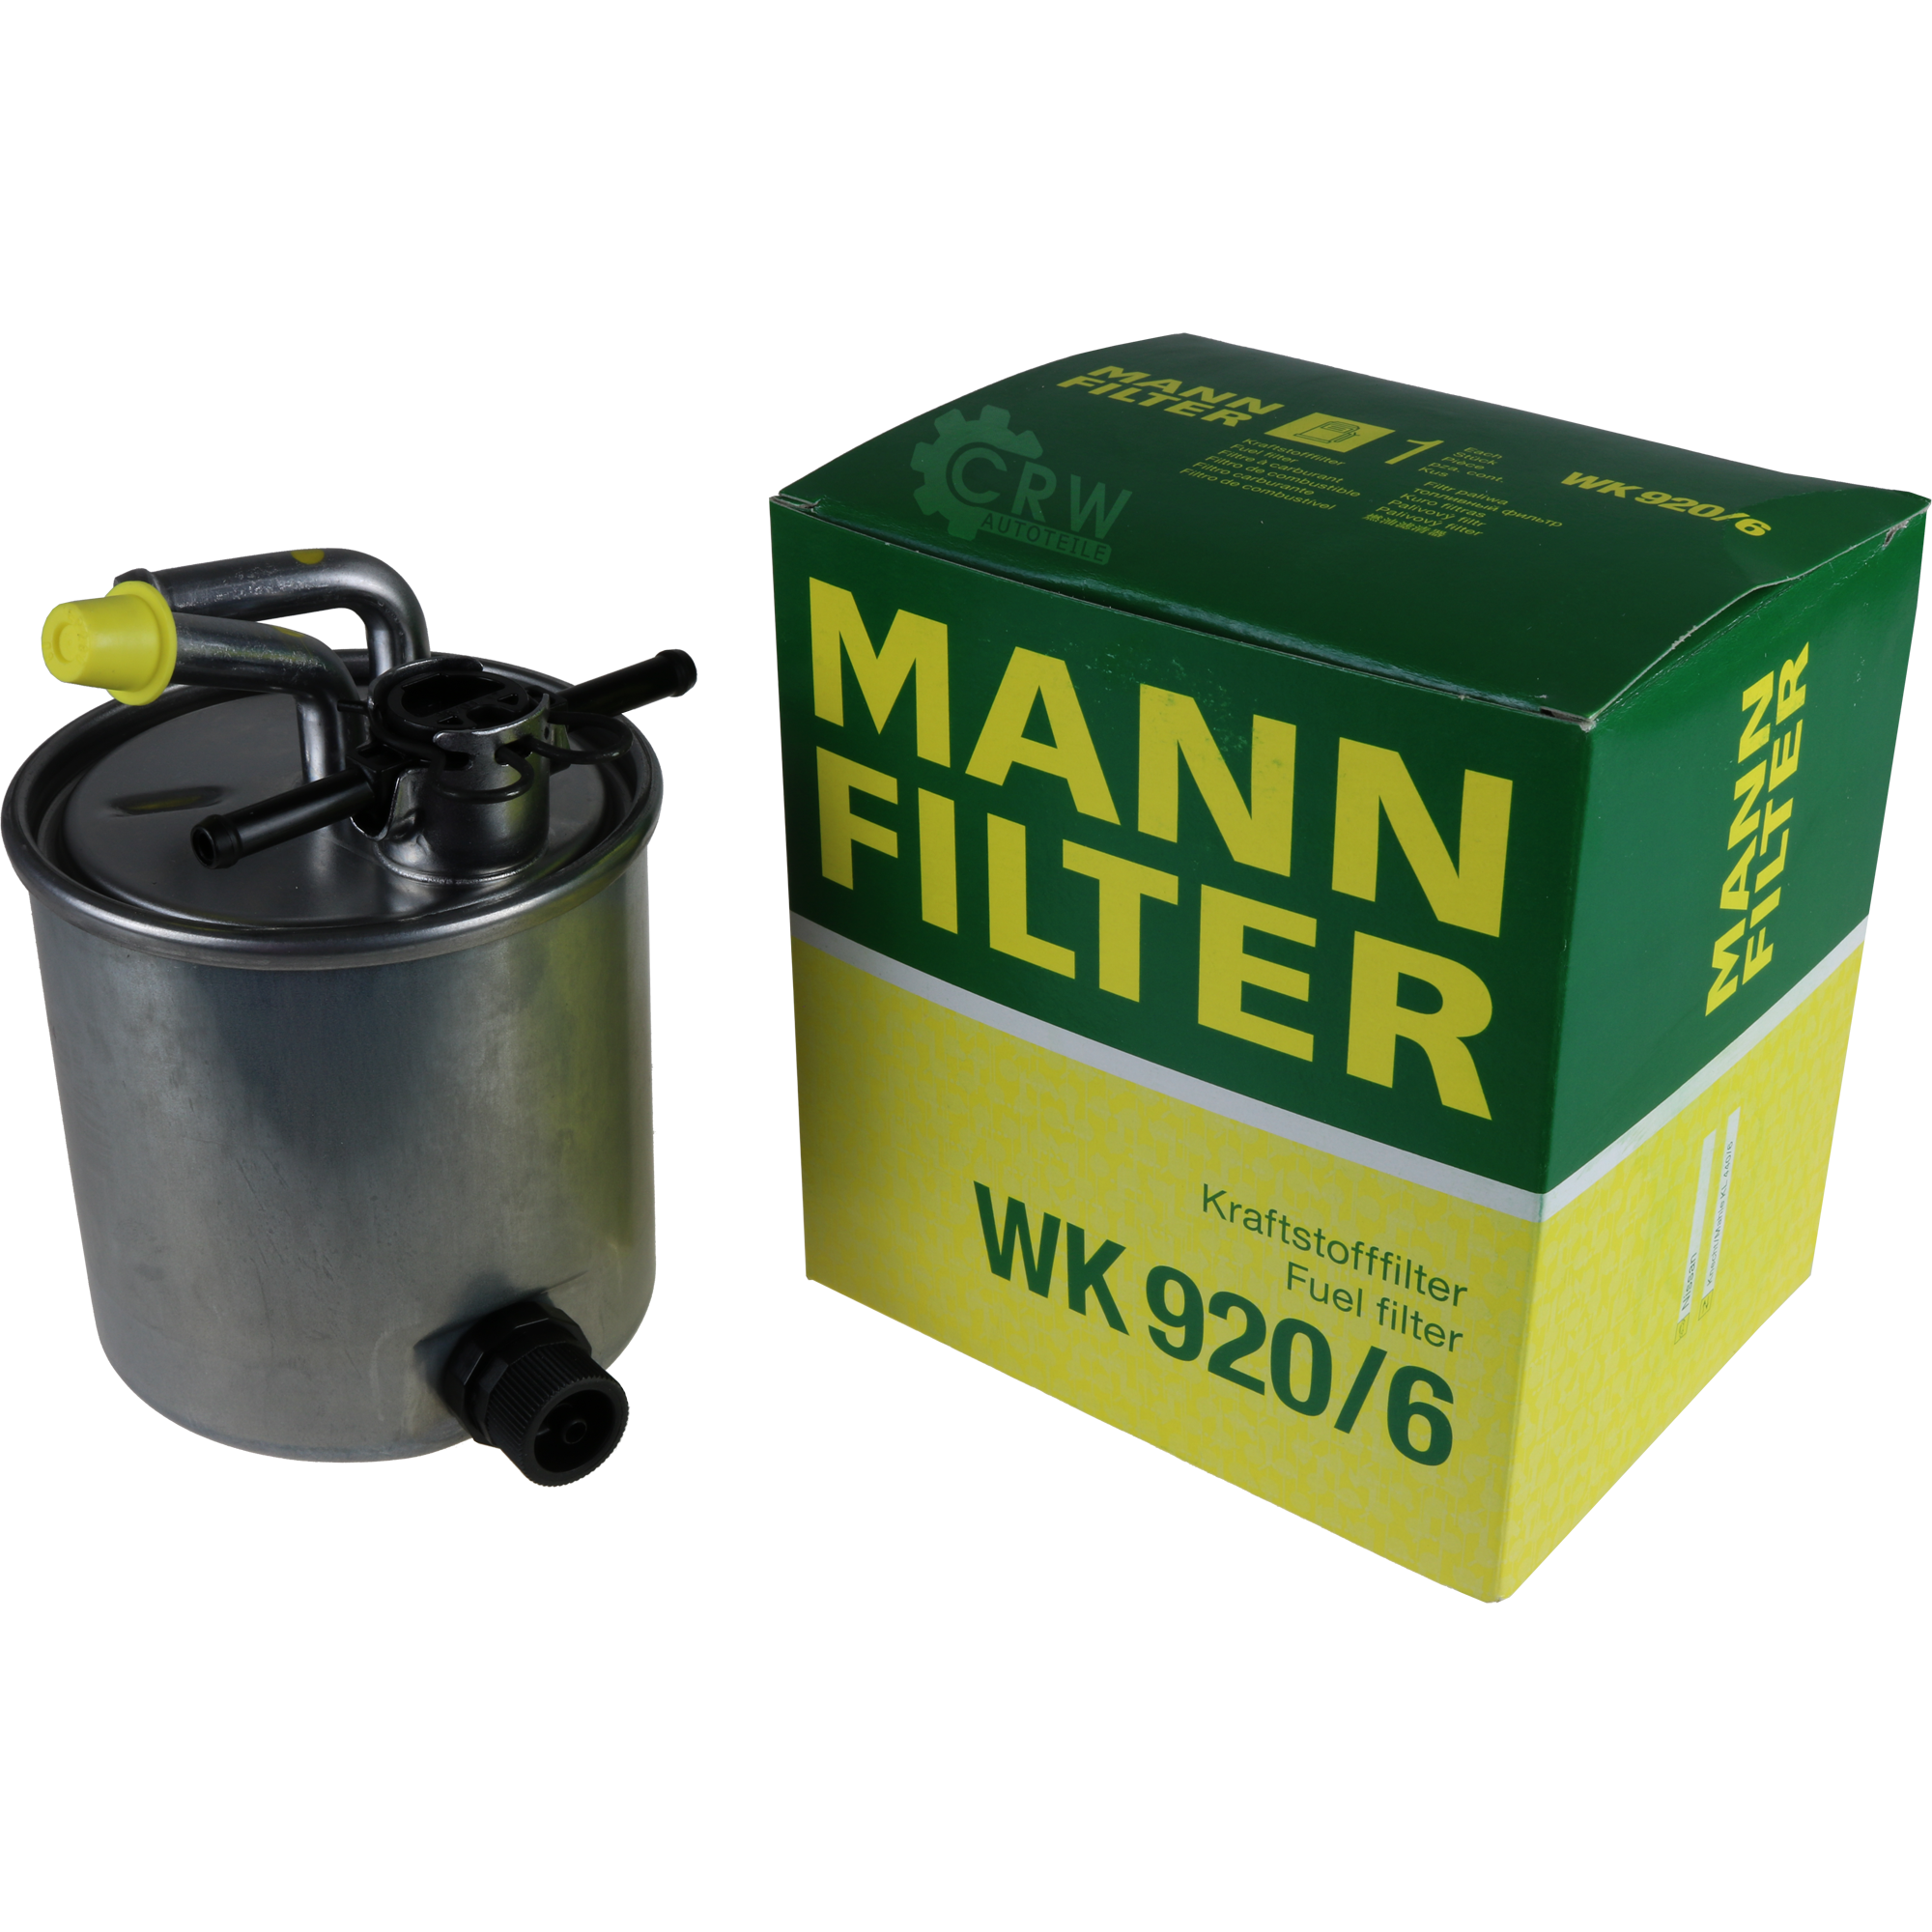 MANN-FILTER Kraftstofffilter WK 920/6 Fuel Filter